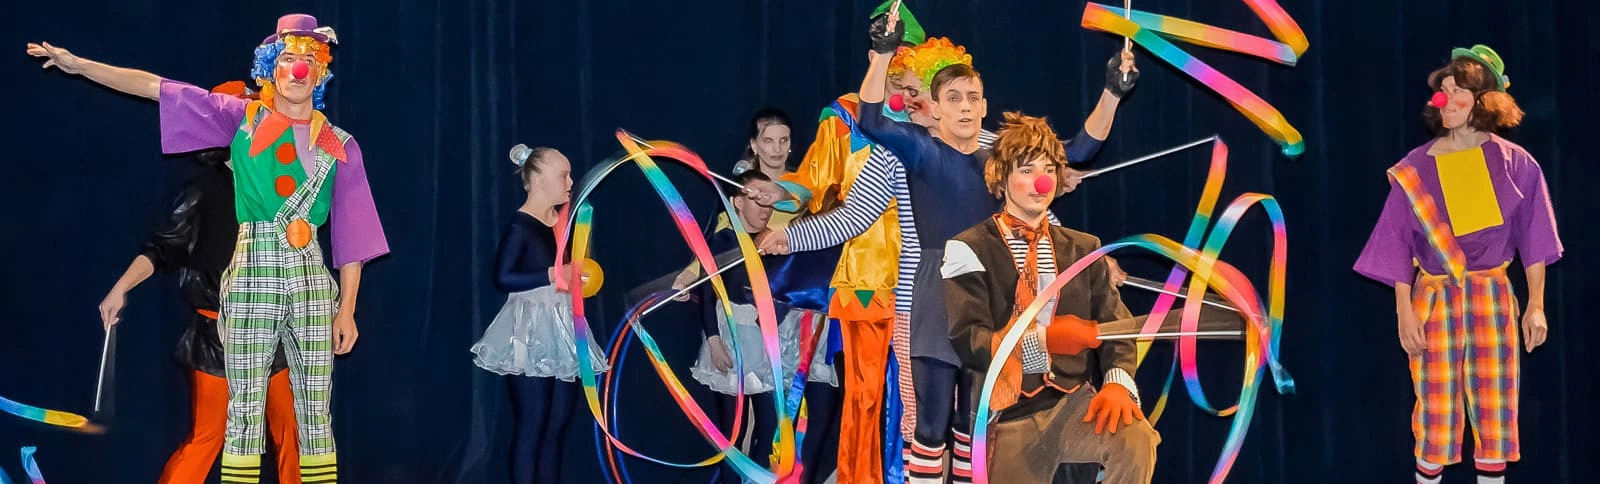 Детский фестиваль циркового искусства в 2021-м году посвящен 100-летию со дня рождения Юрия Никулина